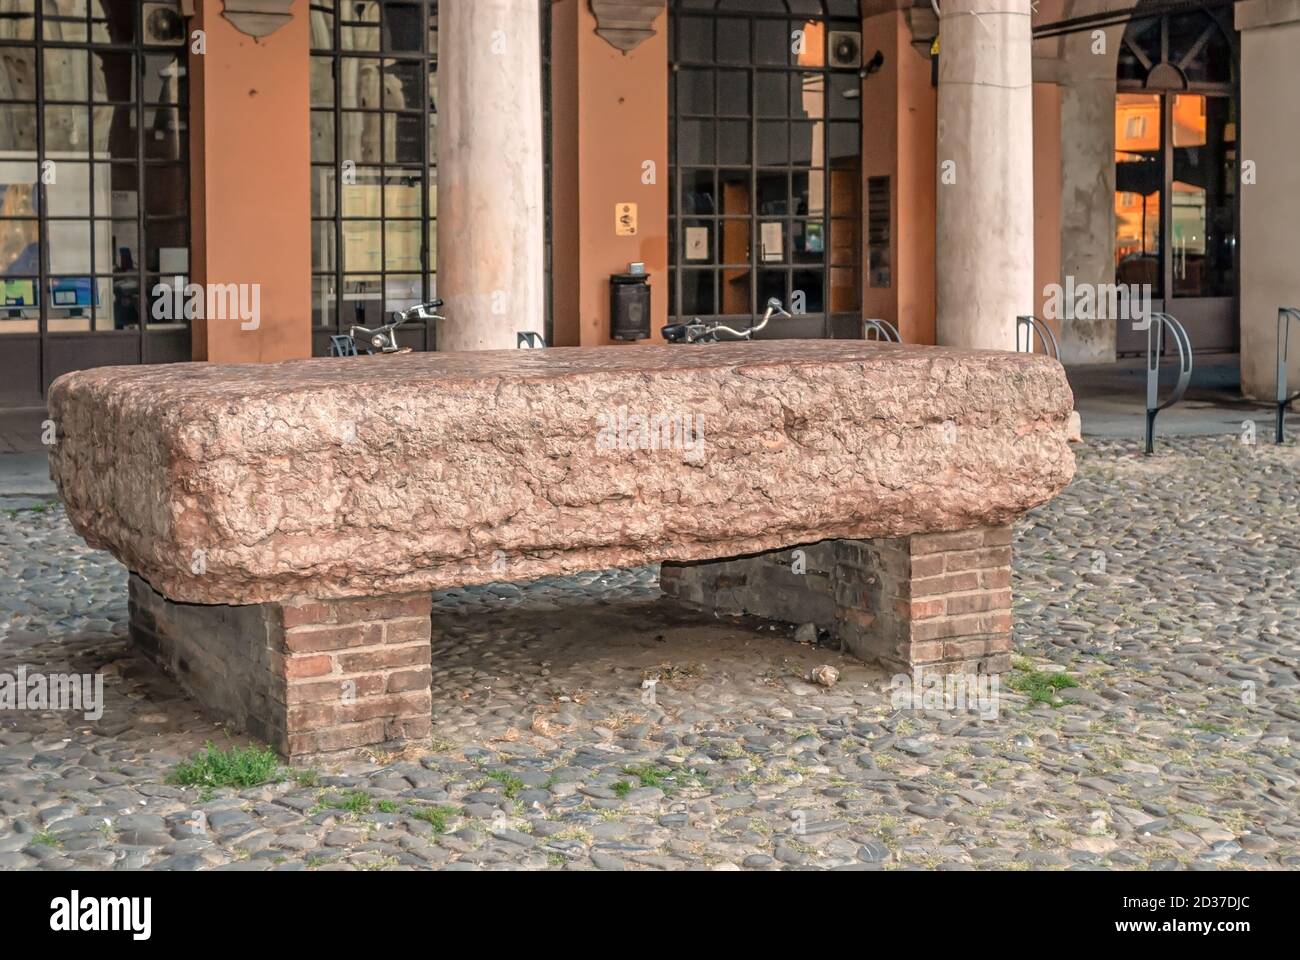 La pietra Ringadora di Modena, Emilia-Romagna, Italia. La tribuna di pietra di fronte all'edificio, serviva come un leggio da cui si tenevano discorsi Foto Stock